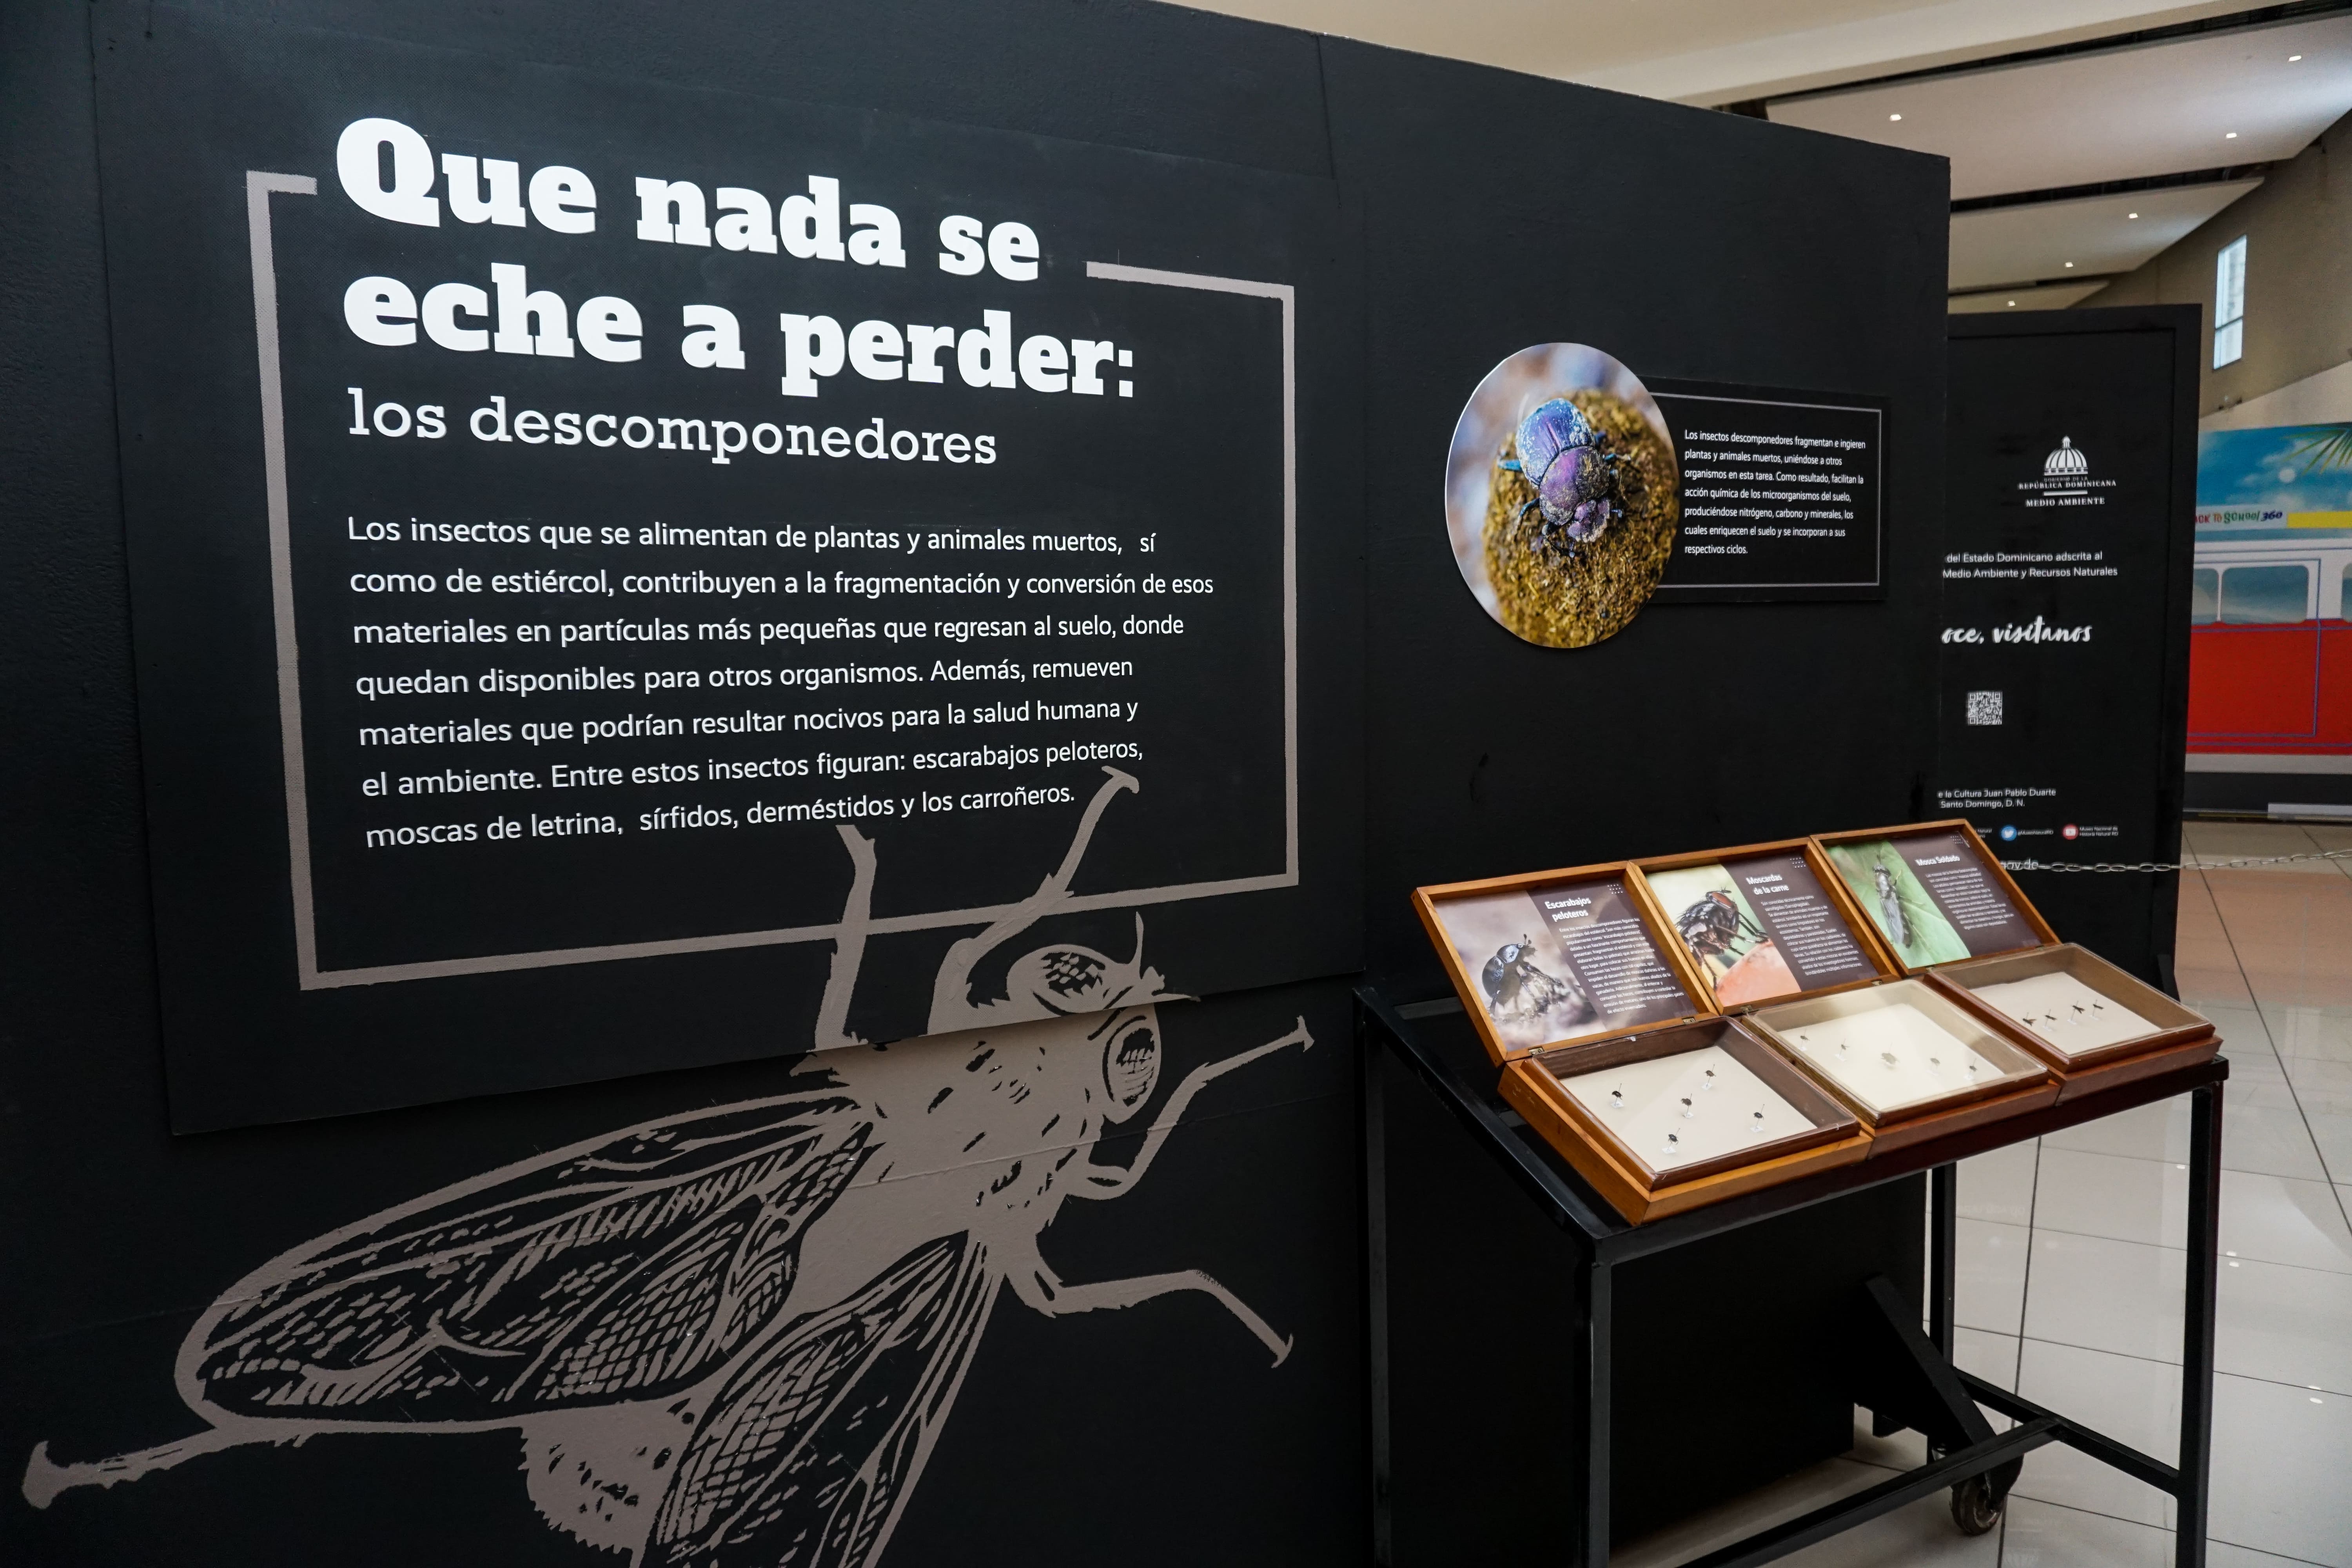 Museo Natural presenta exhibición sobre insectos "Seis patas en acción"